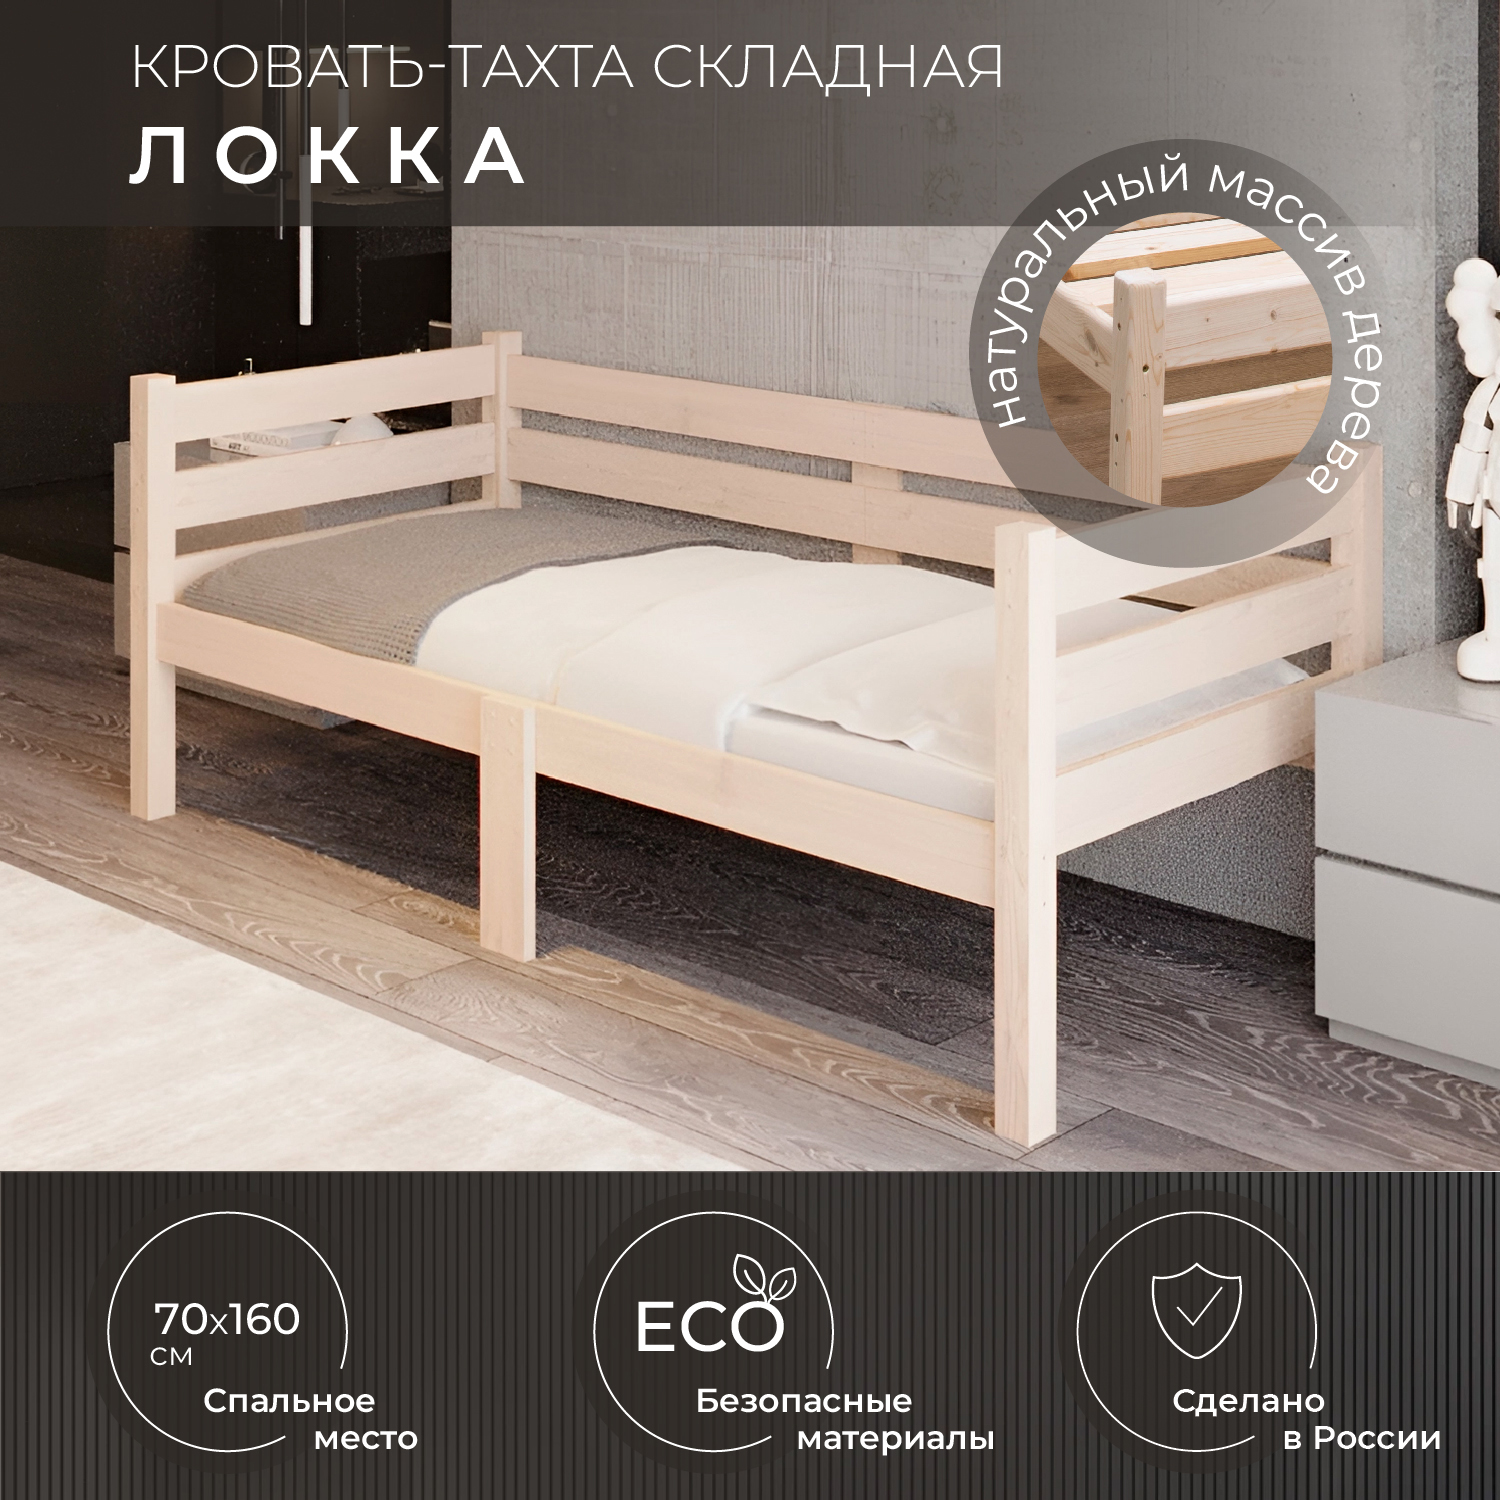 Кровать односпальная Новирон Локка 70х160 см складная бежевый